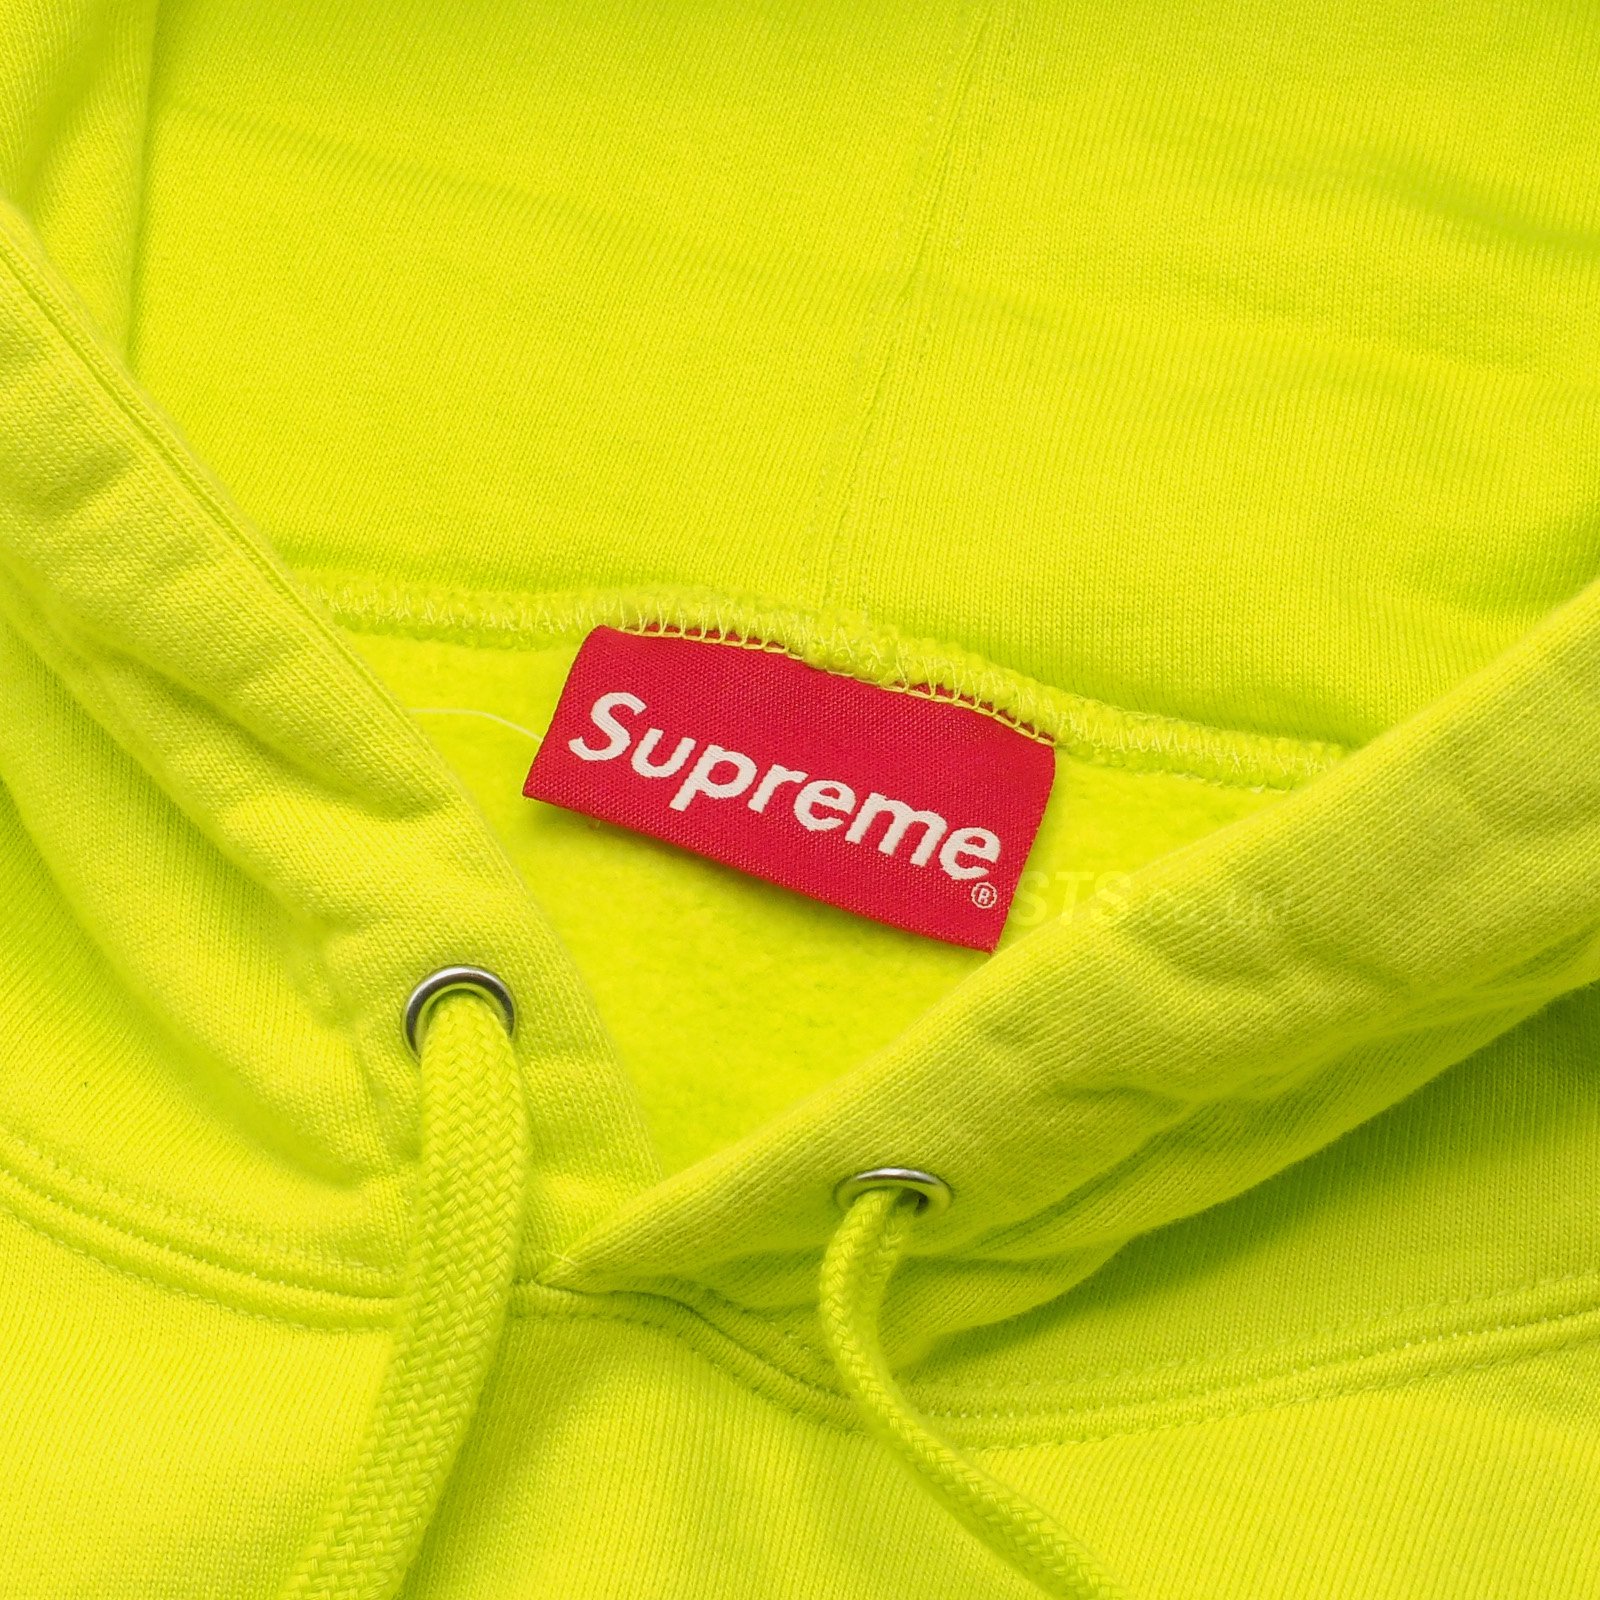 Supreme - Smurfs Hooded Sweatshirt - UG.SHAFT